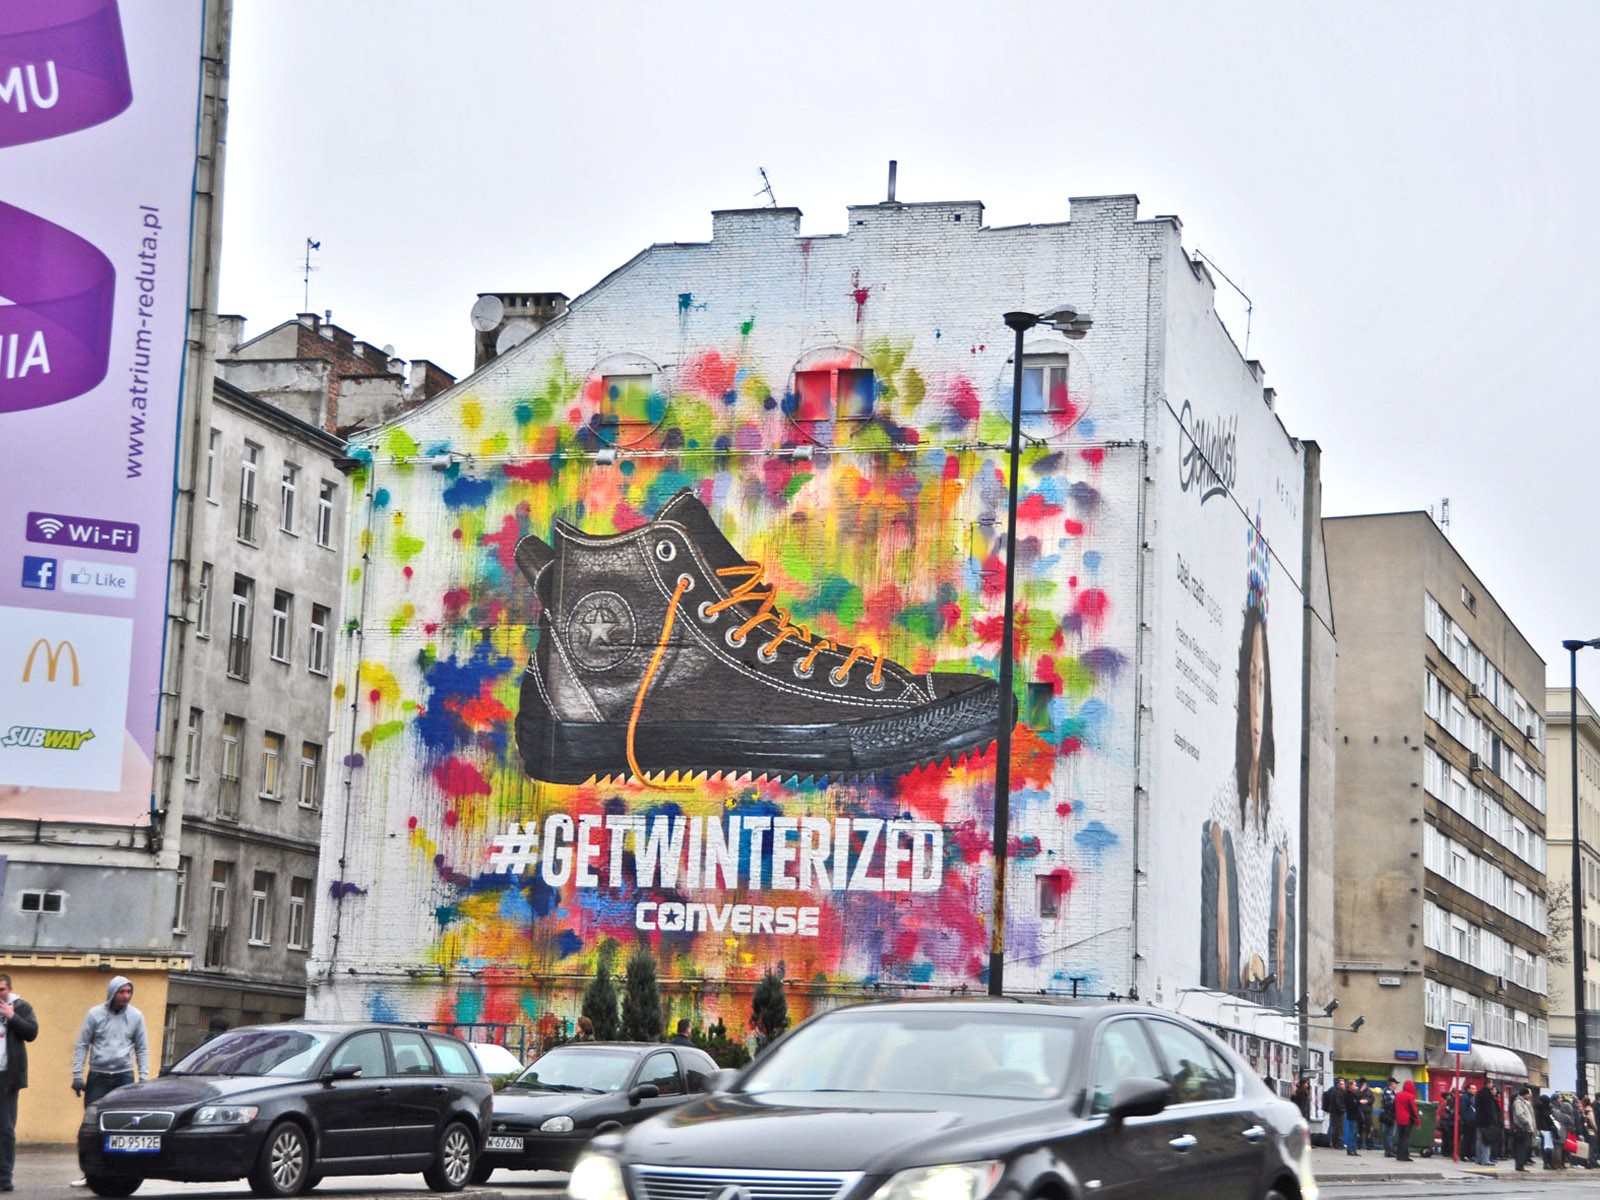 Mural reklamowy Converse getwinterized - Warszawa ul. Polna 40 | malowanie nietypowych reklam | Portfolio